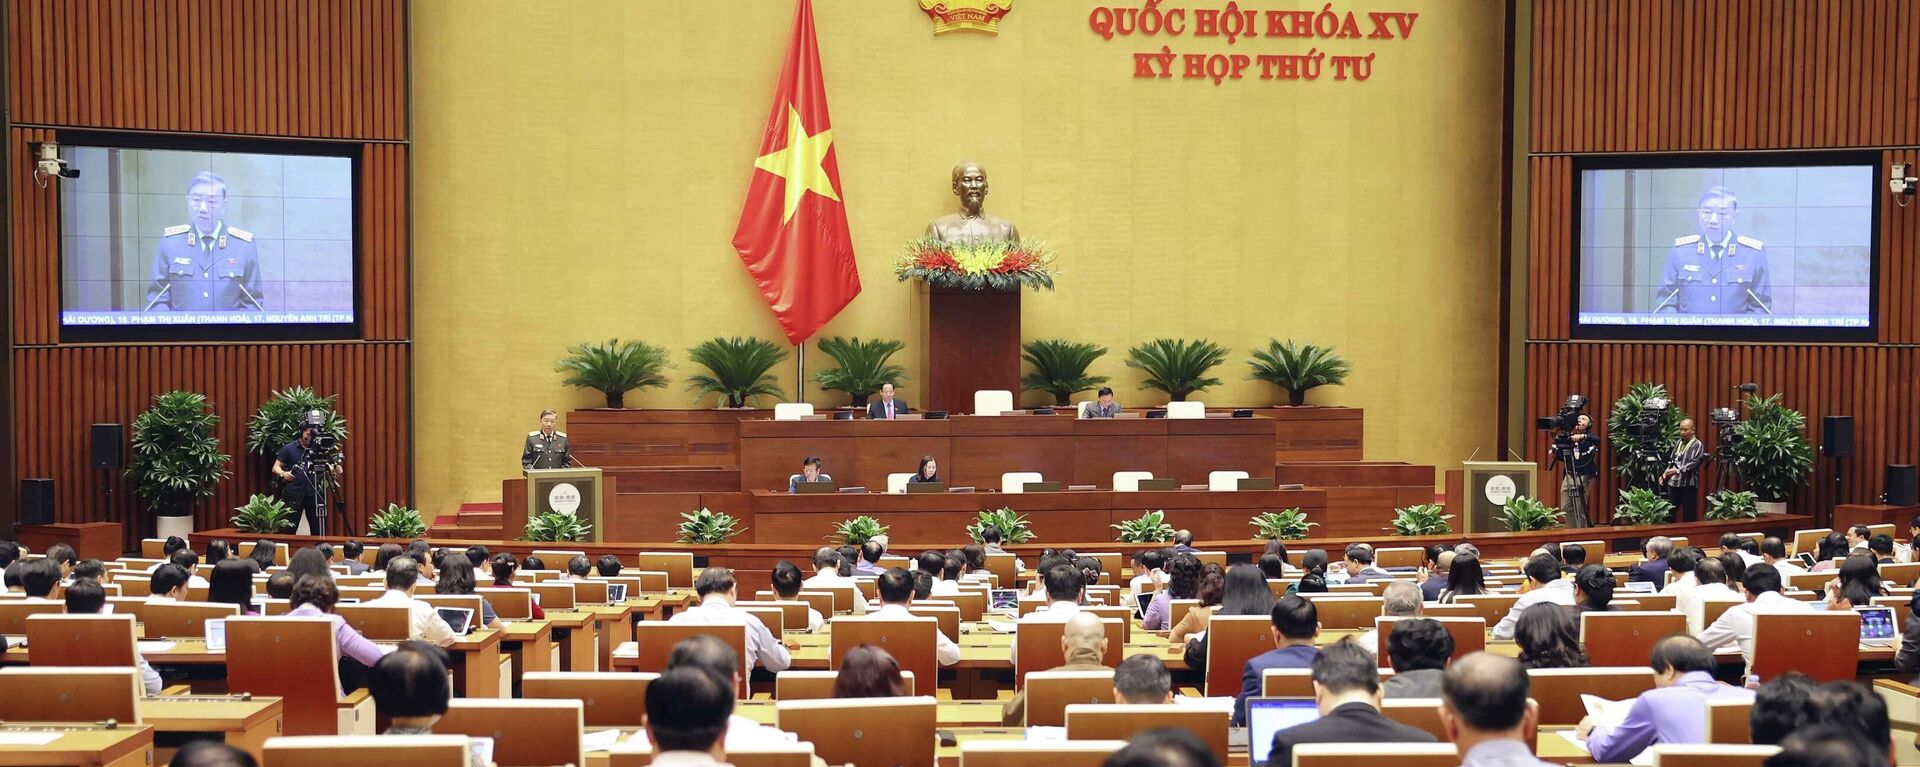 Quốc hội thảo luận về công tác phòng, chống tội phạm và thi hành án năm 2022 - Sputnik Việt Nam, 1920, 15.11.2022